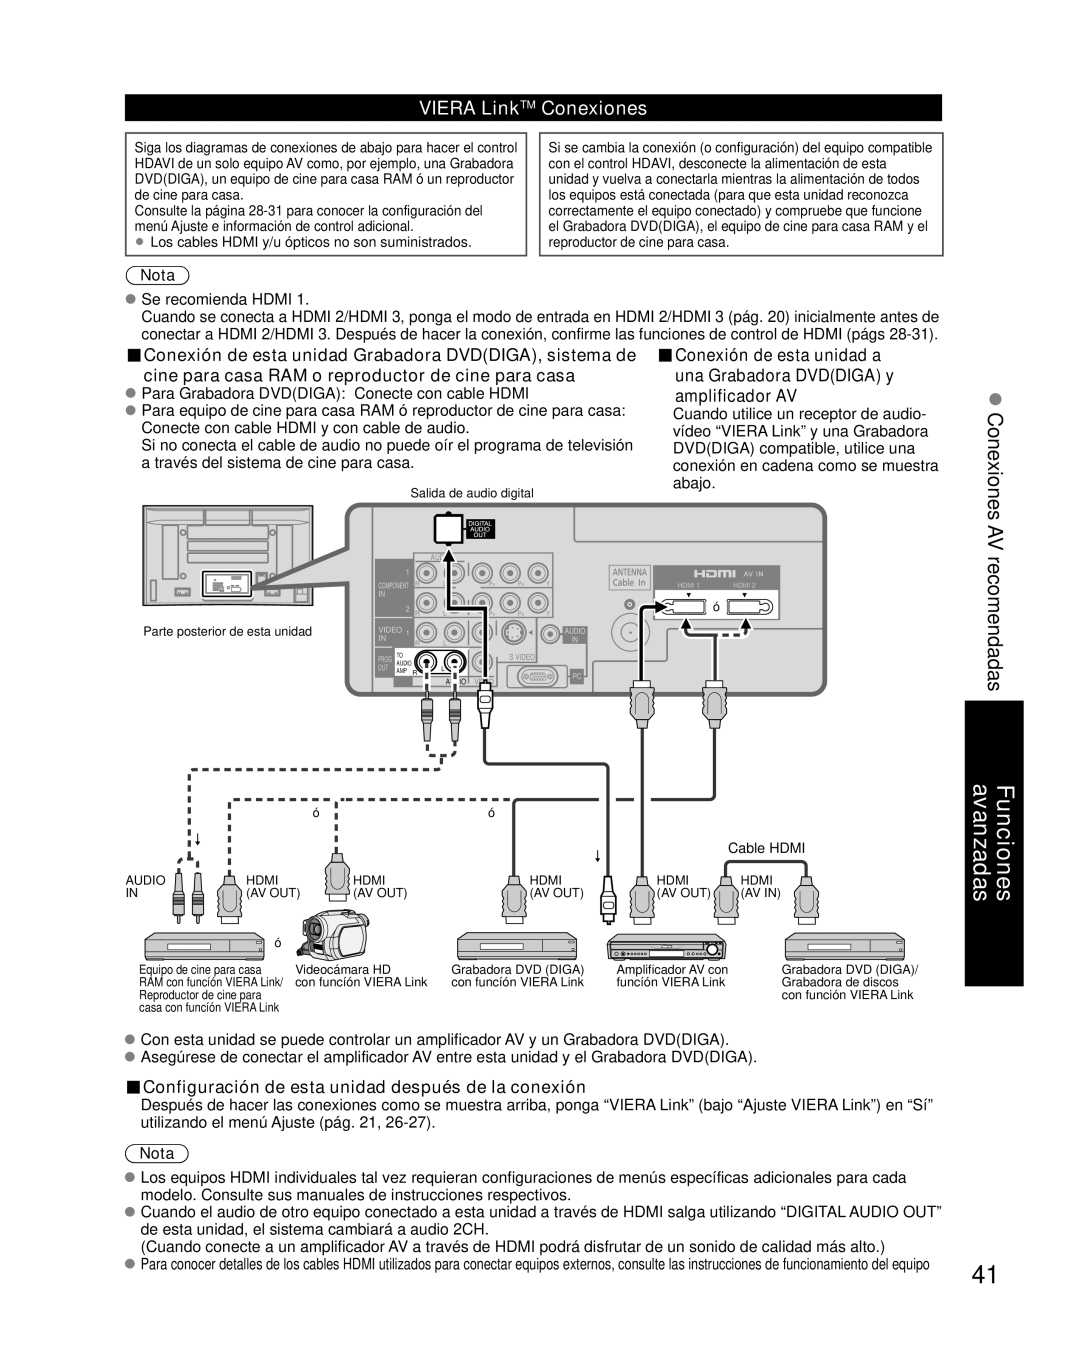 Panasonic TH-42PZ85U AV recomendadas, VIERA LinkTM Conexiones, Conexión de esta unidad Grabadora DVDDIGA, sistema de, Nota 